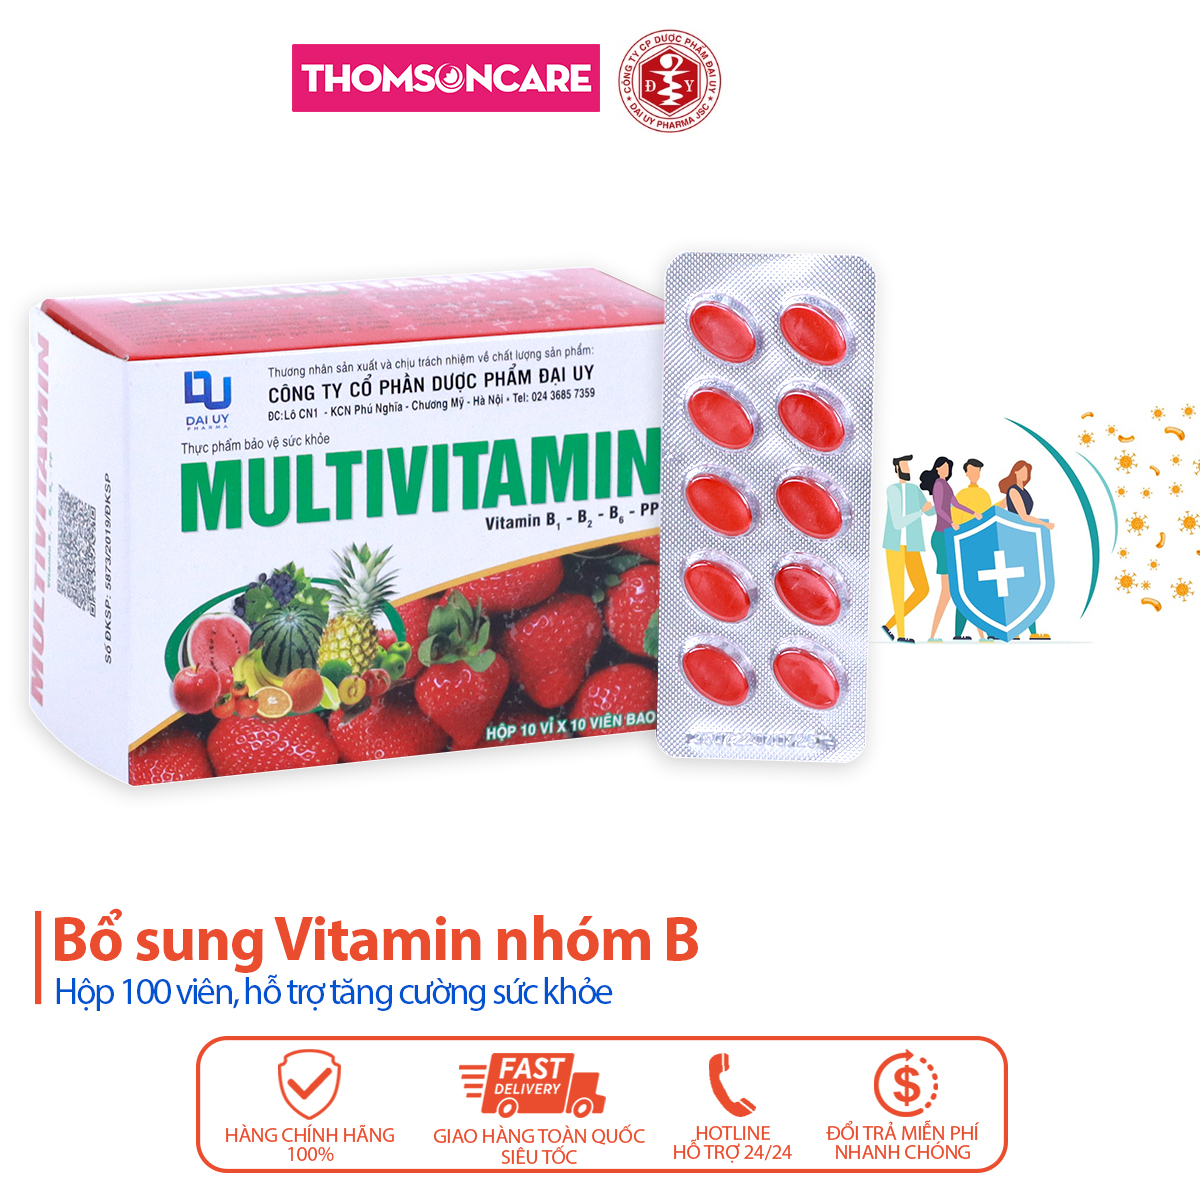 Vitamin tổng hợp Multivitamin B1 B2 B6 PP dành cho người gầy yếu, mệt mỏi